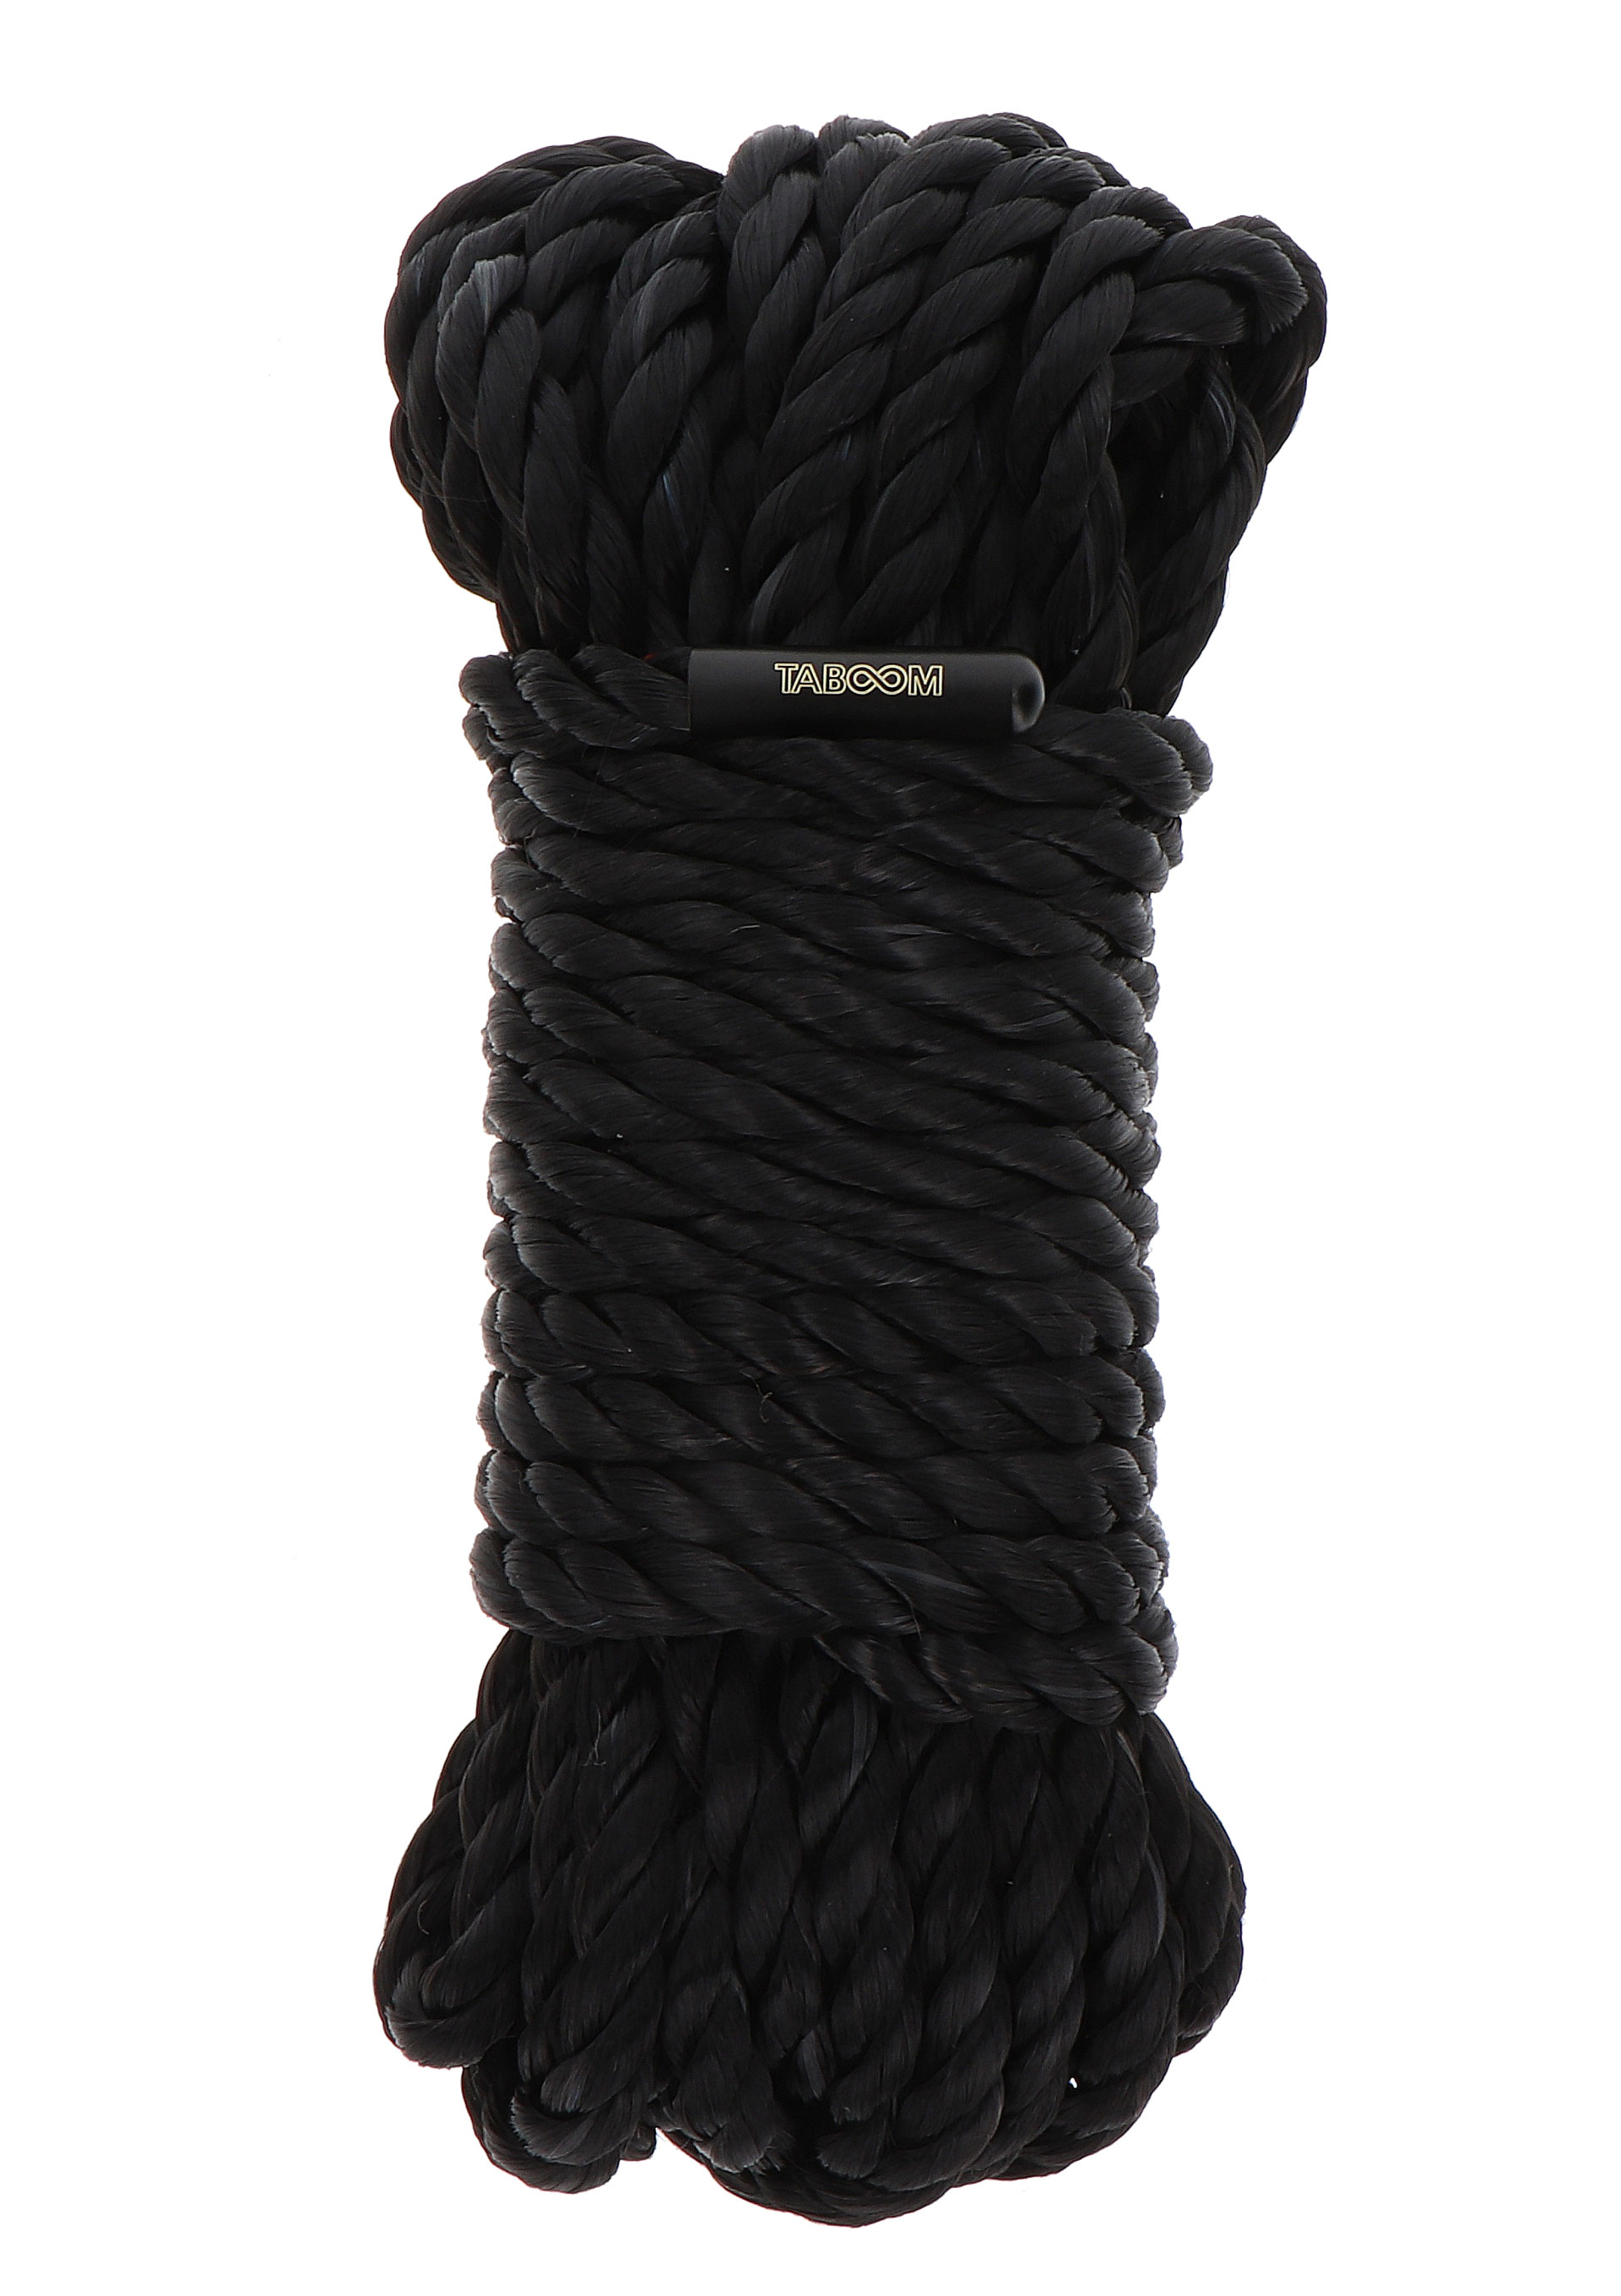 Taboom - Taboom Bondage Rope 10 meter 7mm Black